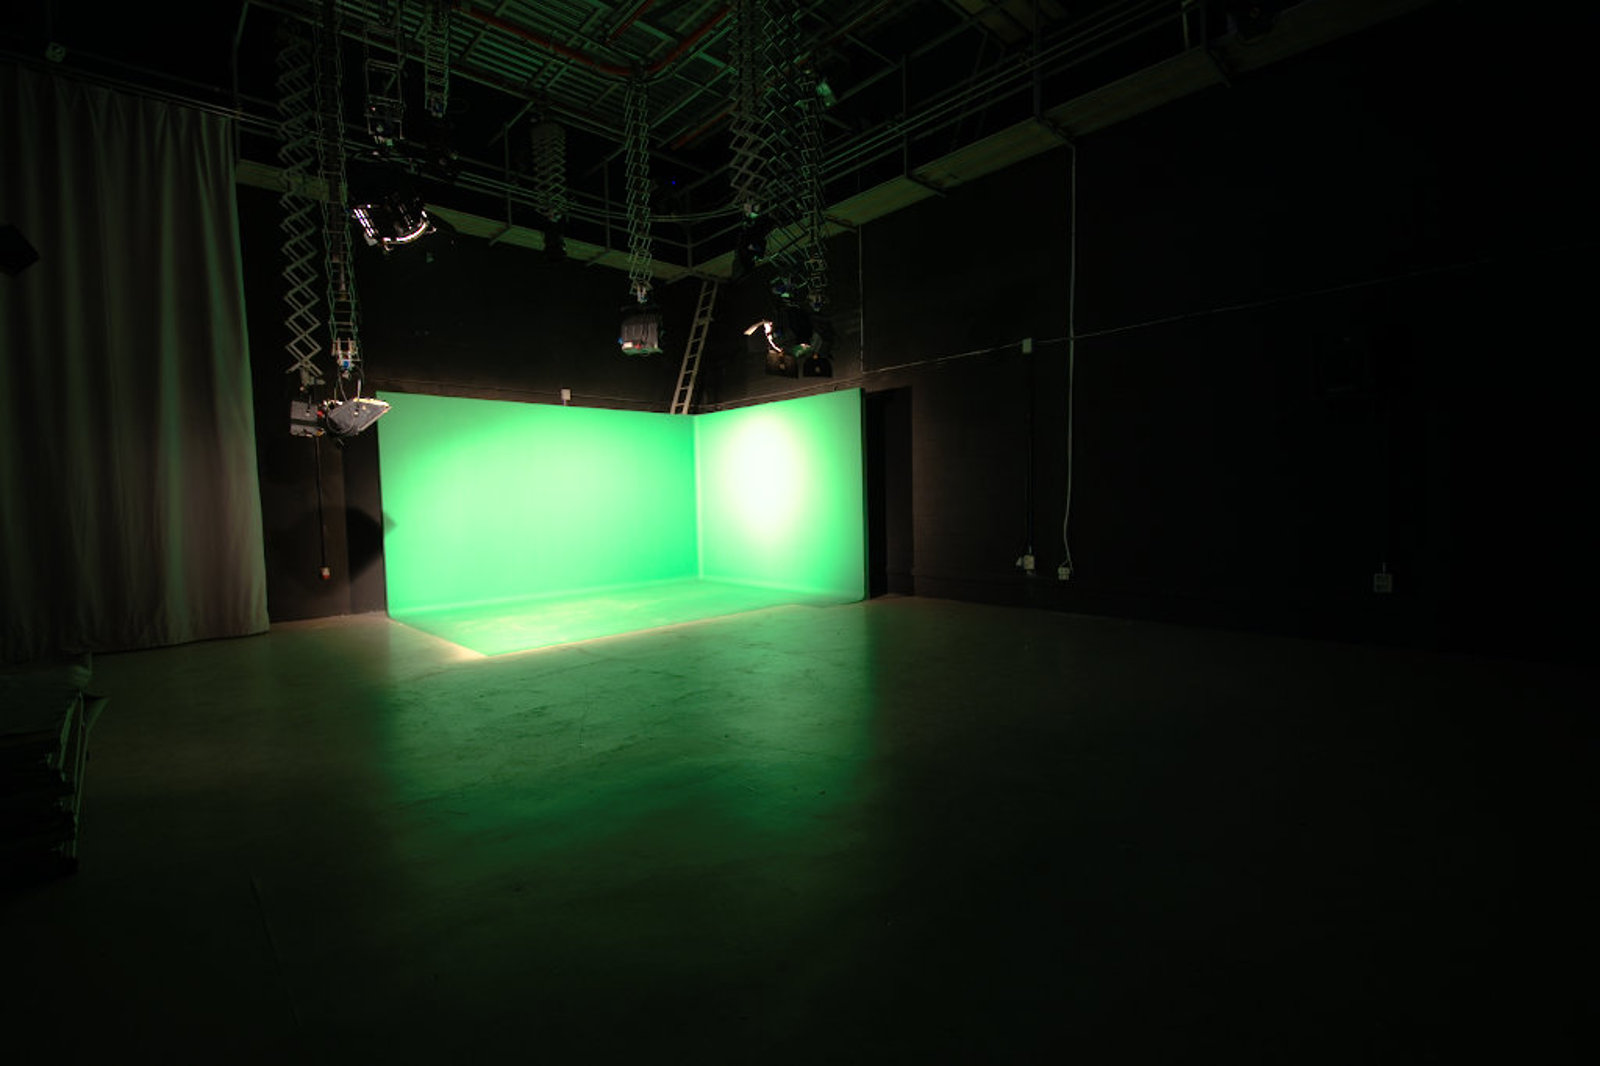 Escuela de Imagen y Sonido de Vigo EISV. Plató profesional de televisión - plató 200 - chroma instalado y vista general